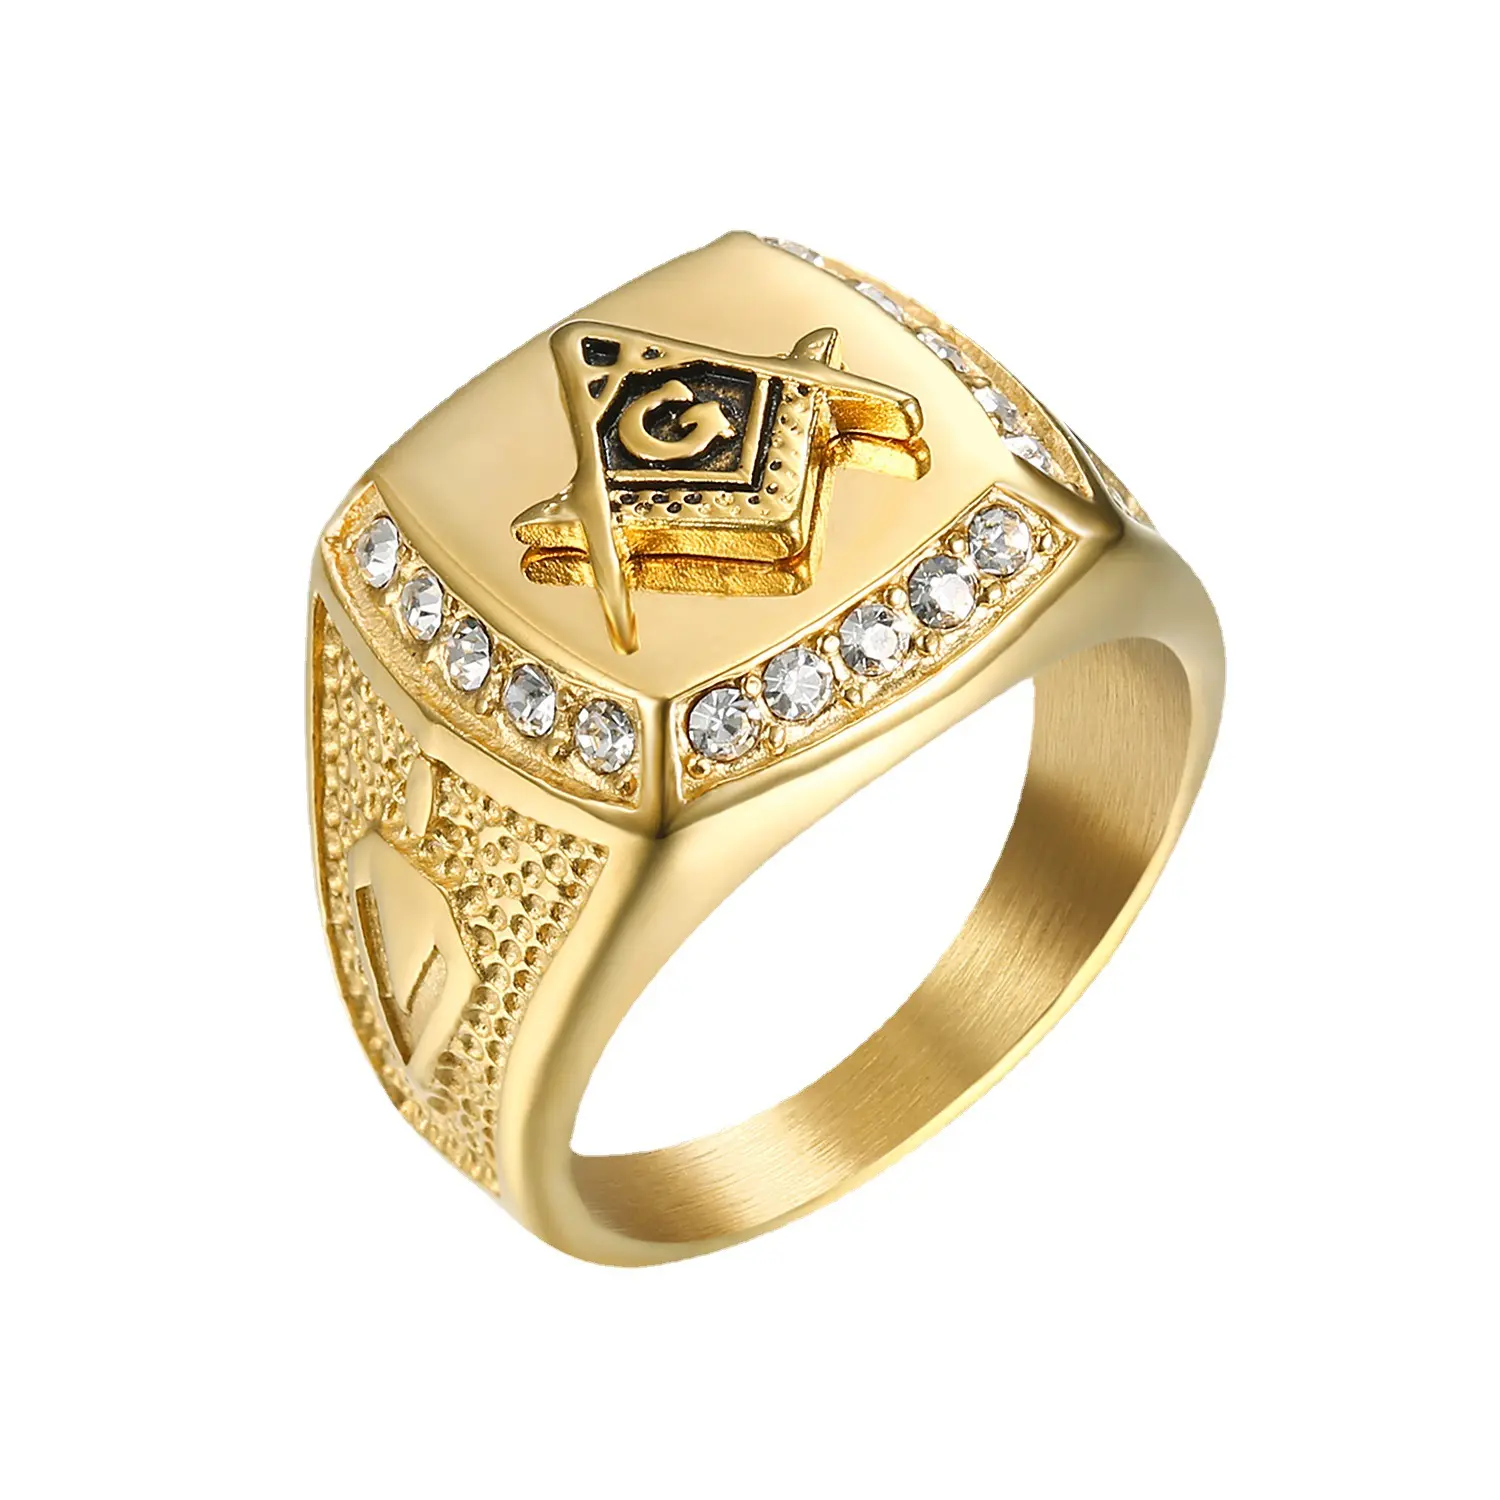 Yiwu Daicy eBay cincin perhiasan bagus grosir cincin persaudaraan Freemasonry AG Retro klasik pinggiran silang Eropa dan Amerika